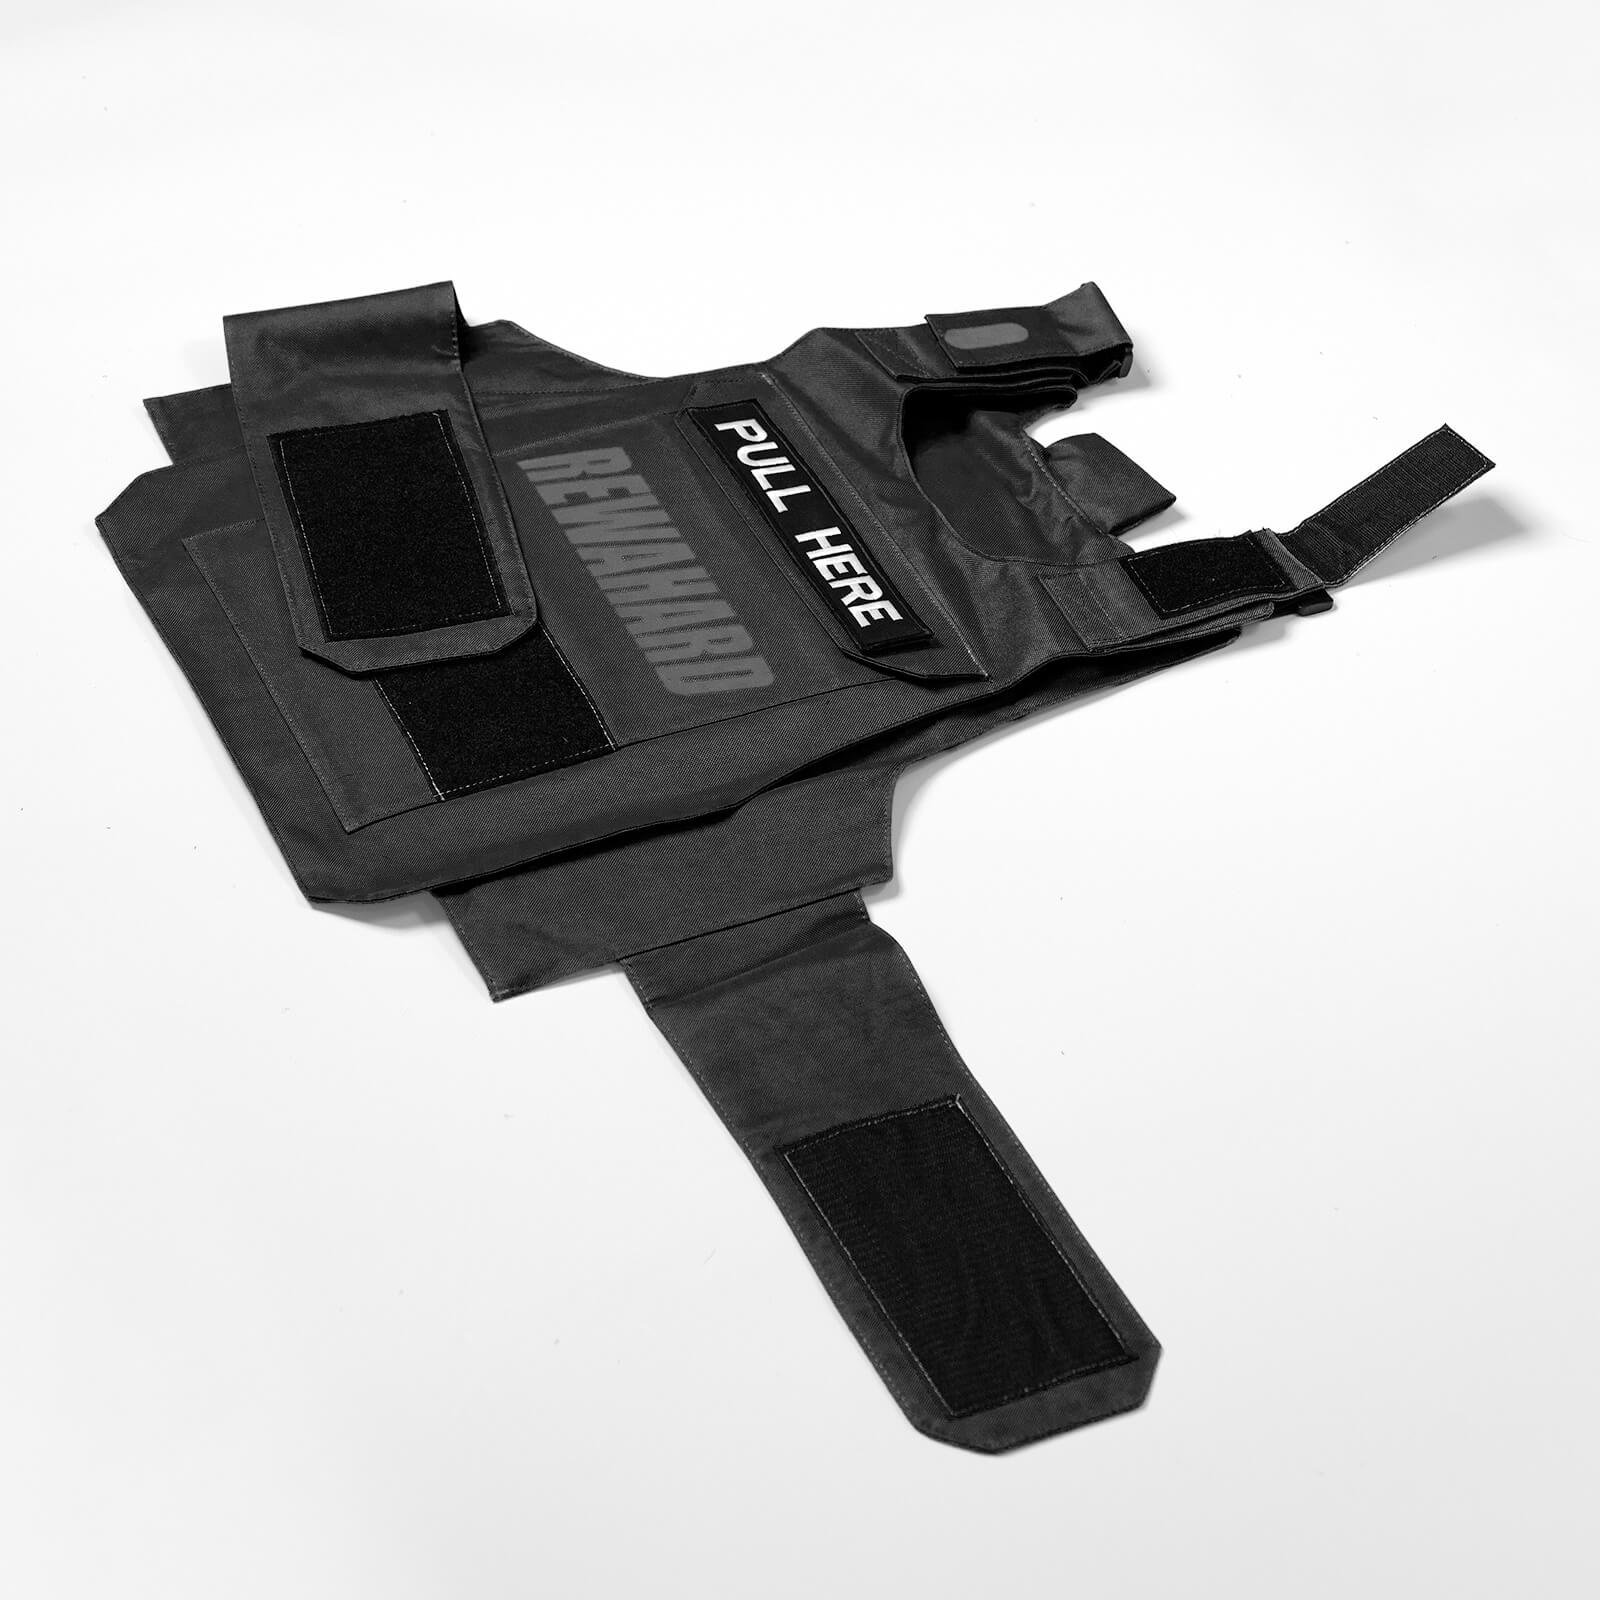 Rewahard Plate Carrier Vest - Black